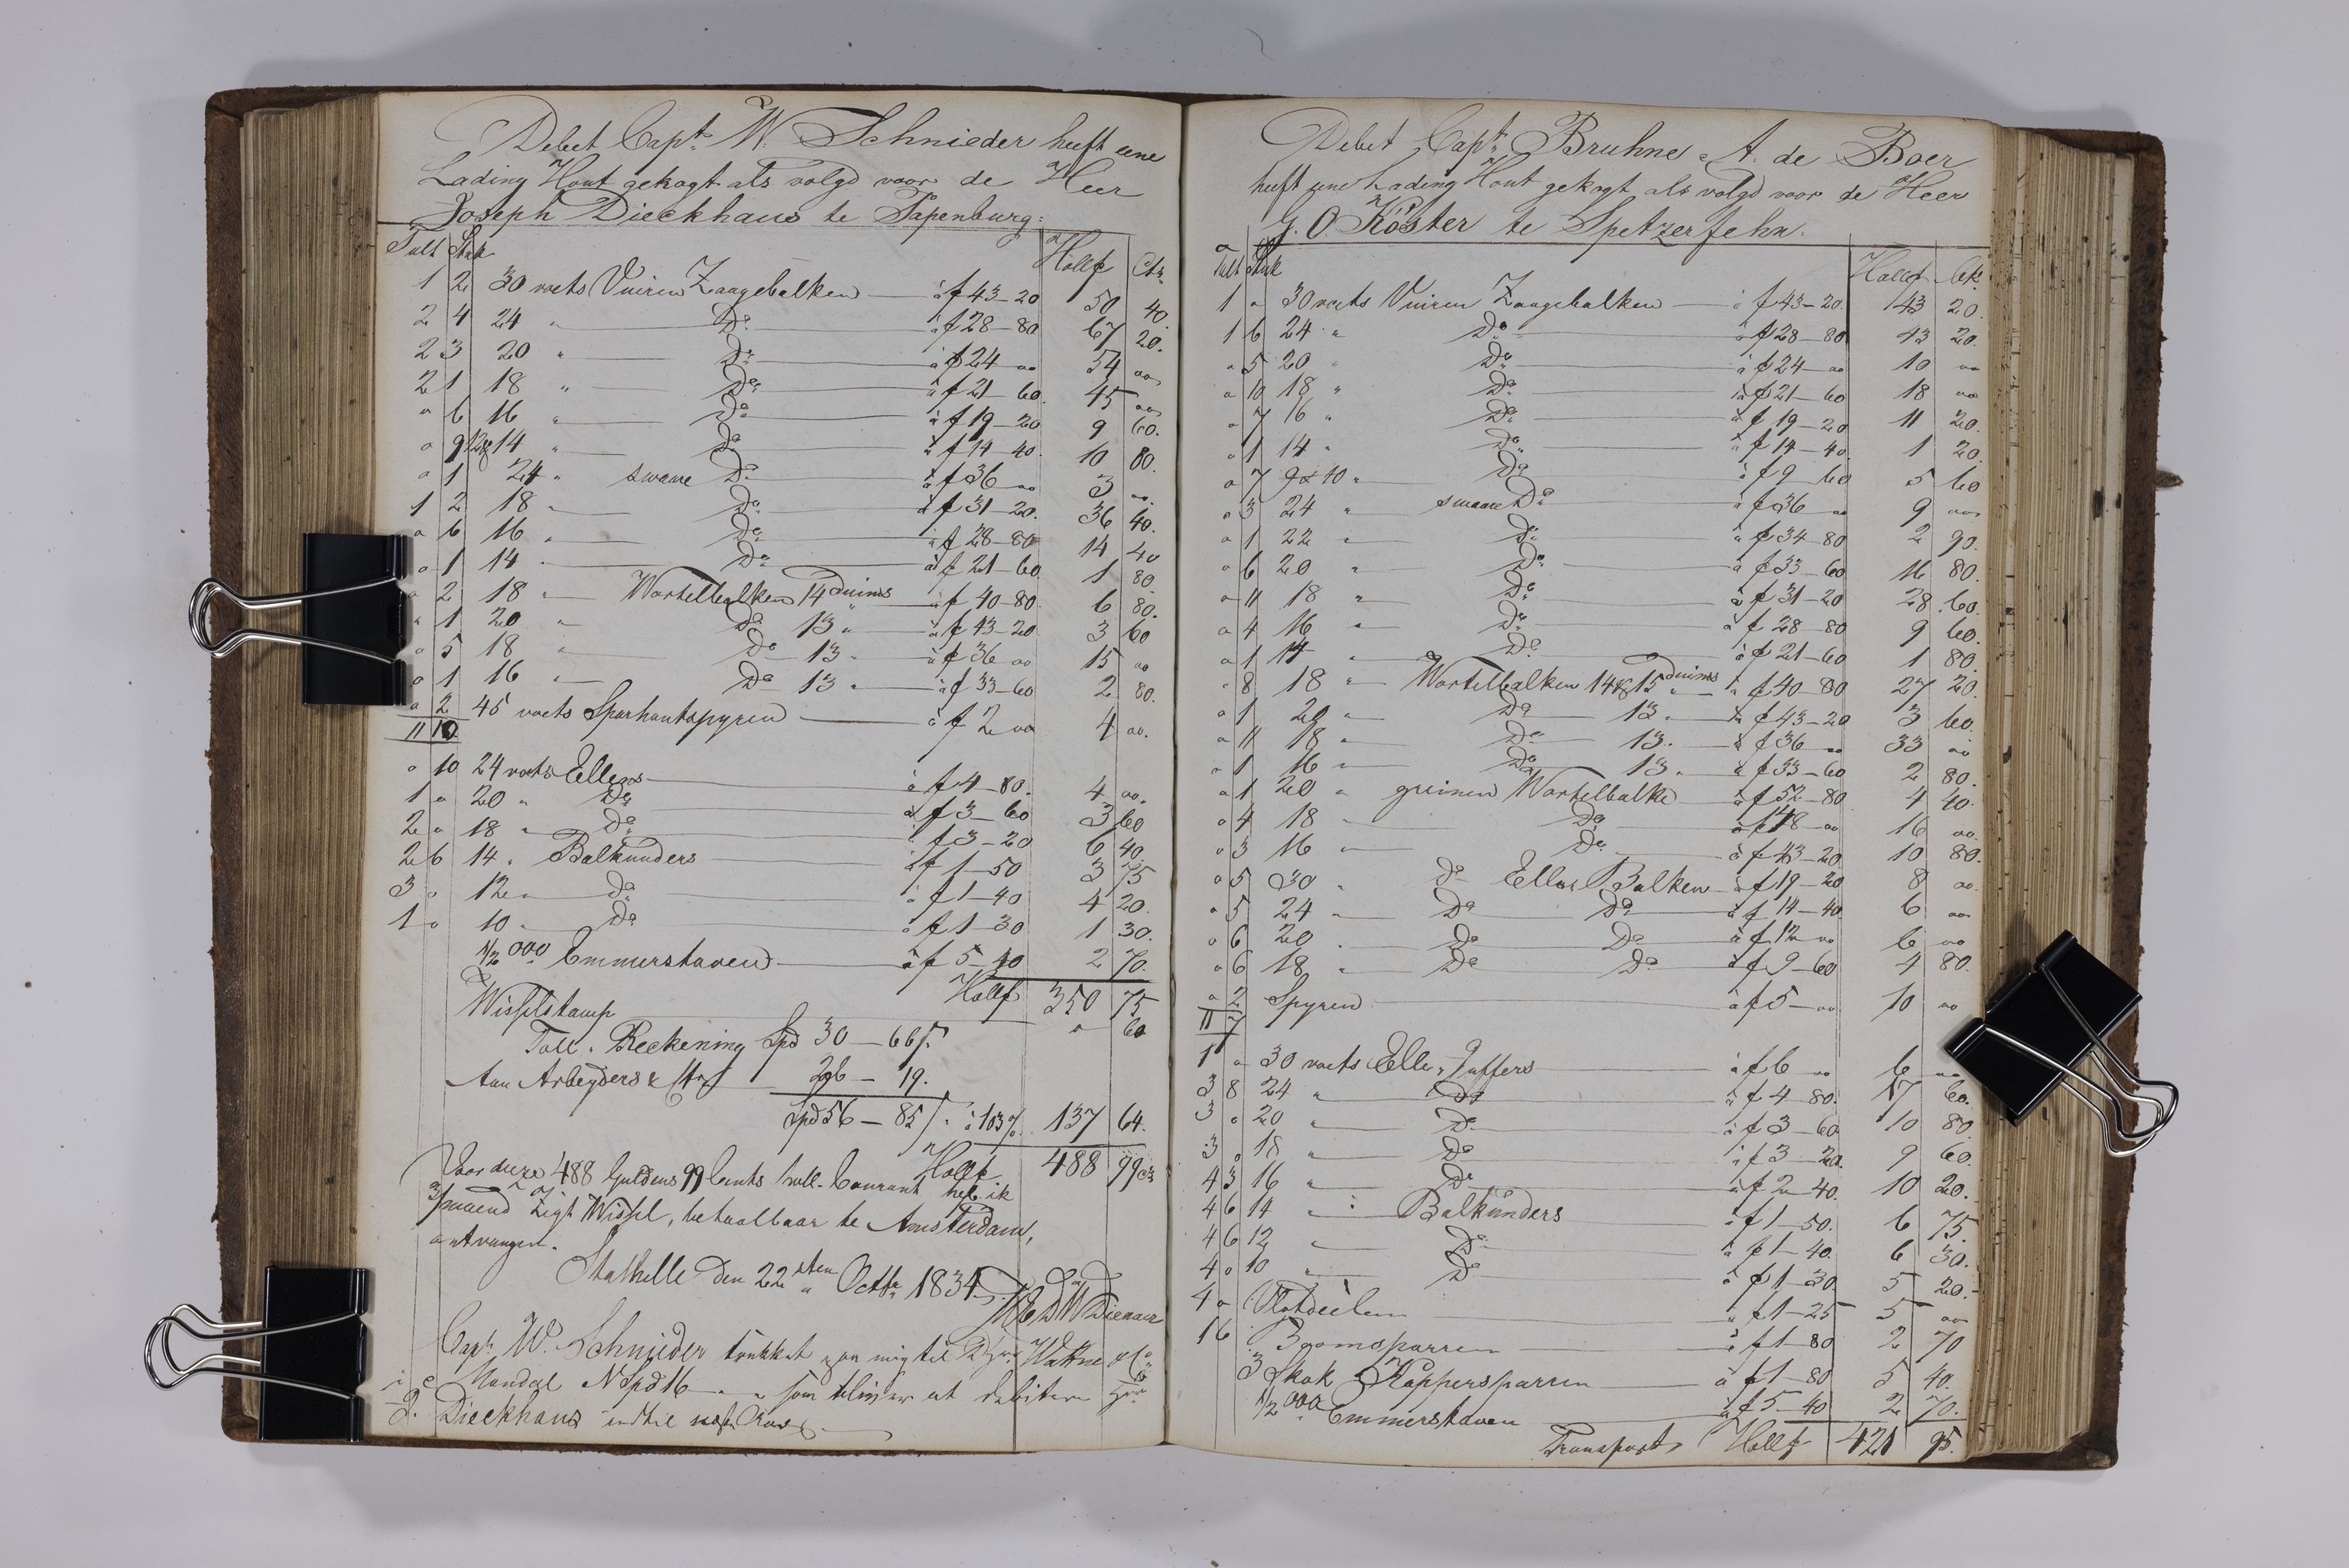 , Priscourant-tømmerpriser, 1834-38, 1834-1838, s. 164